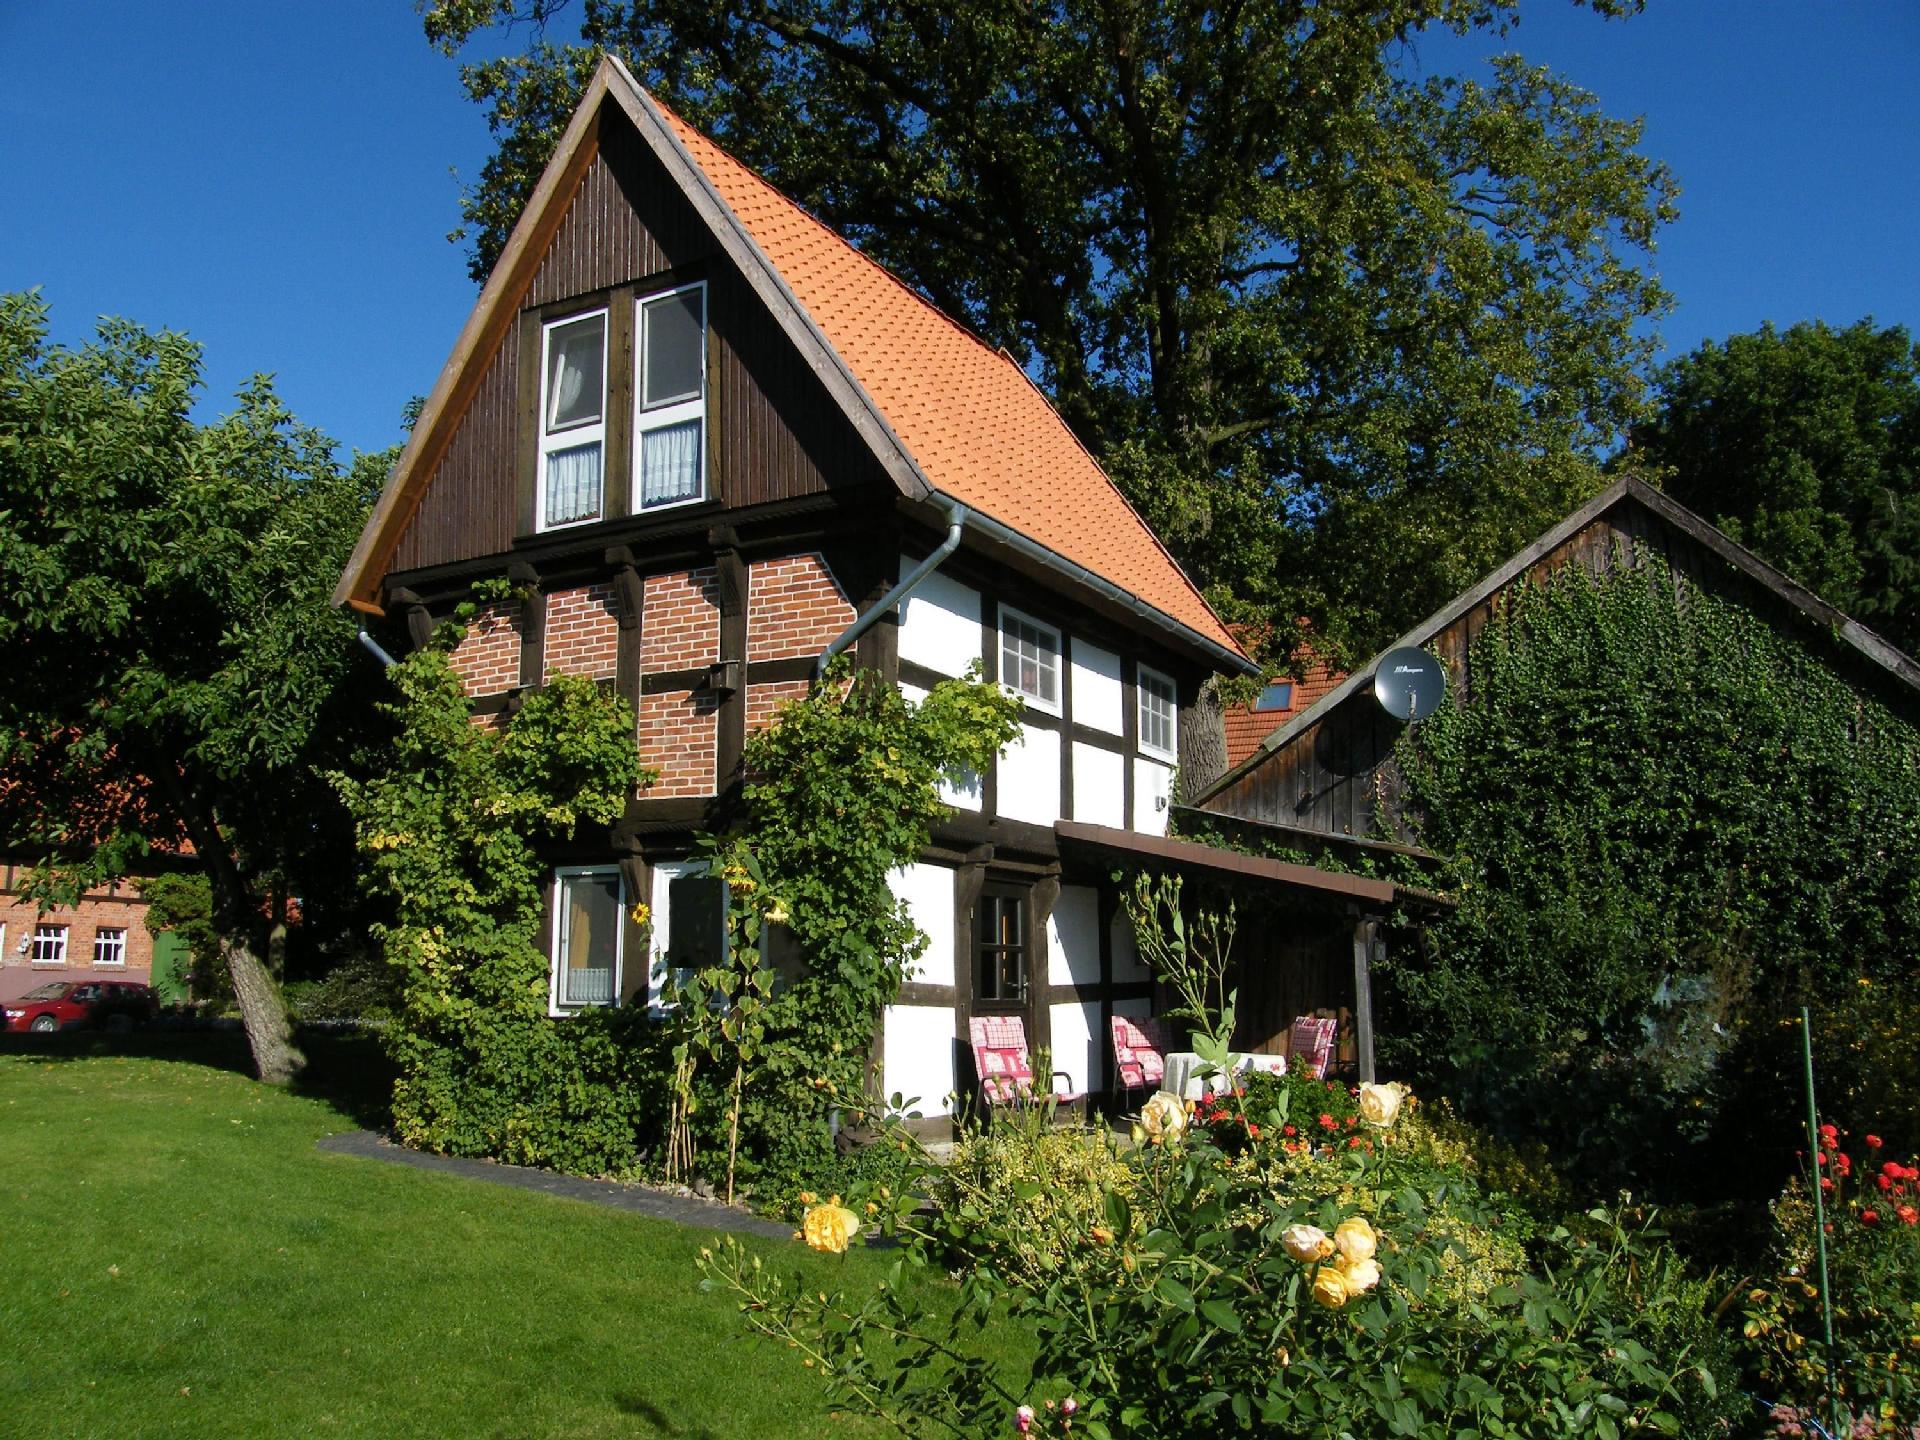 Zum Ferienhaus umgebauter, historischer Speicher,  Ferienhaus in Deutschland